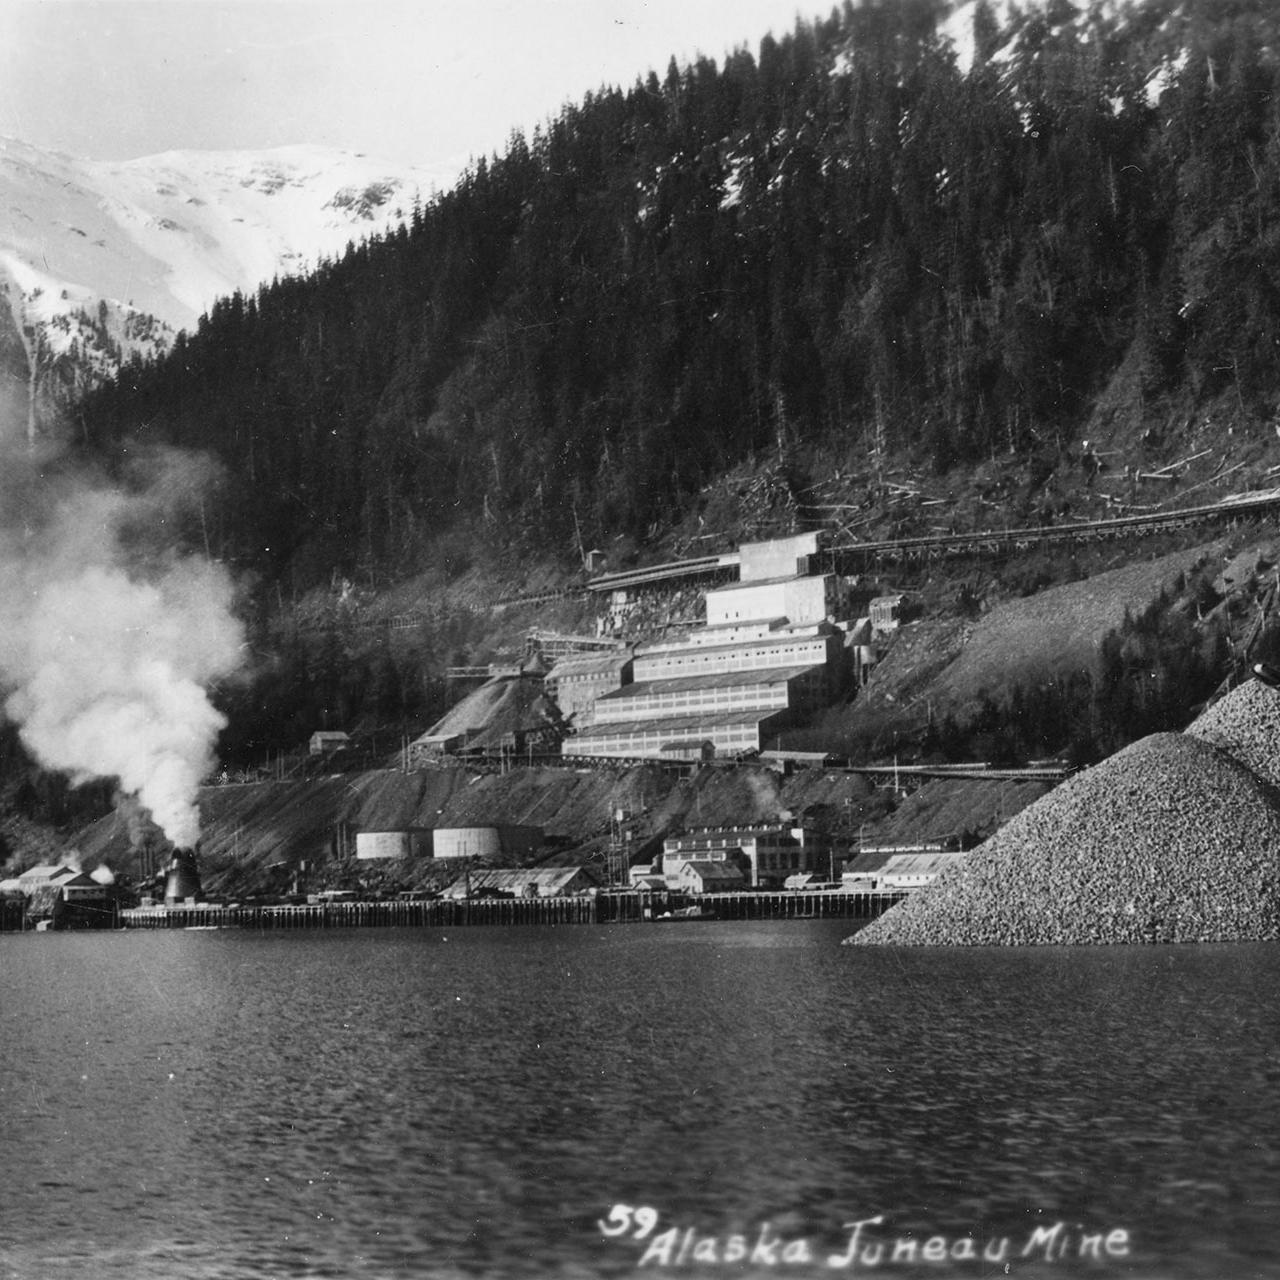 Alaska Juneau Gold Mining Co.